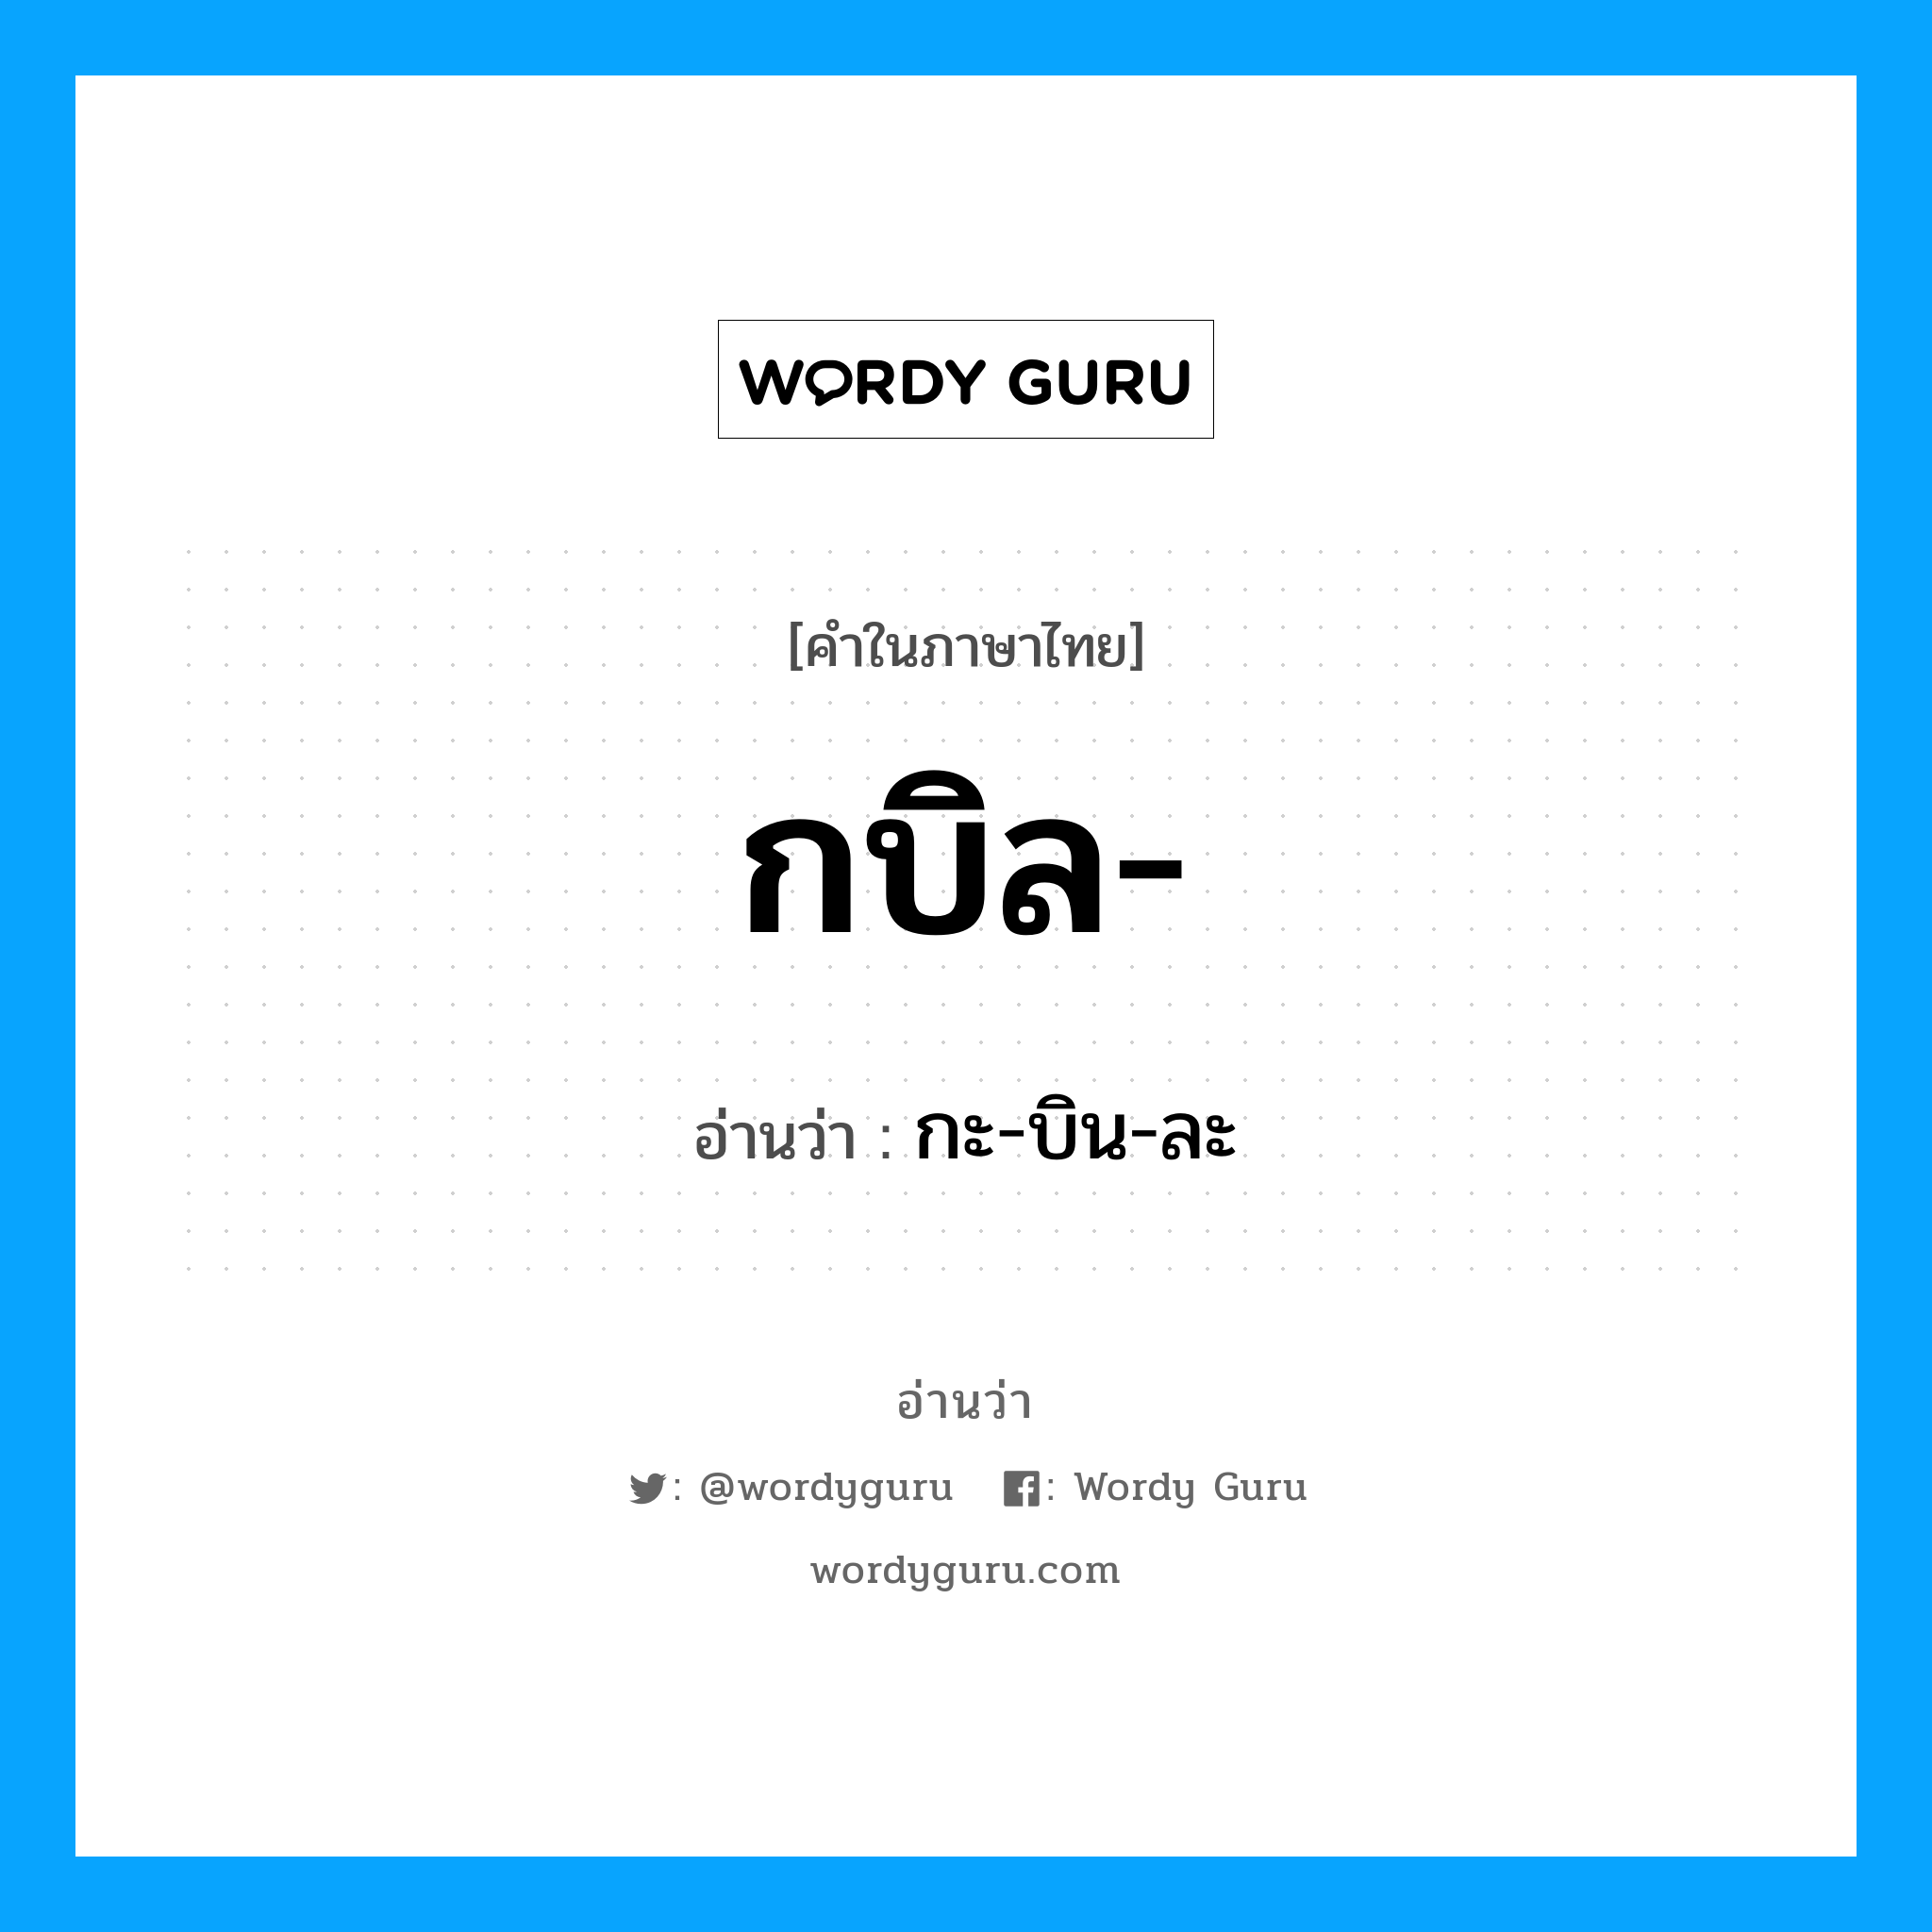 กะ-บิน-ละ เป็นคำอ่านของคำไหน?, คำในภาษาไทย กะ-บิน-ละ อ่านว่า กบิล-